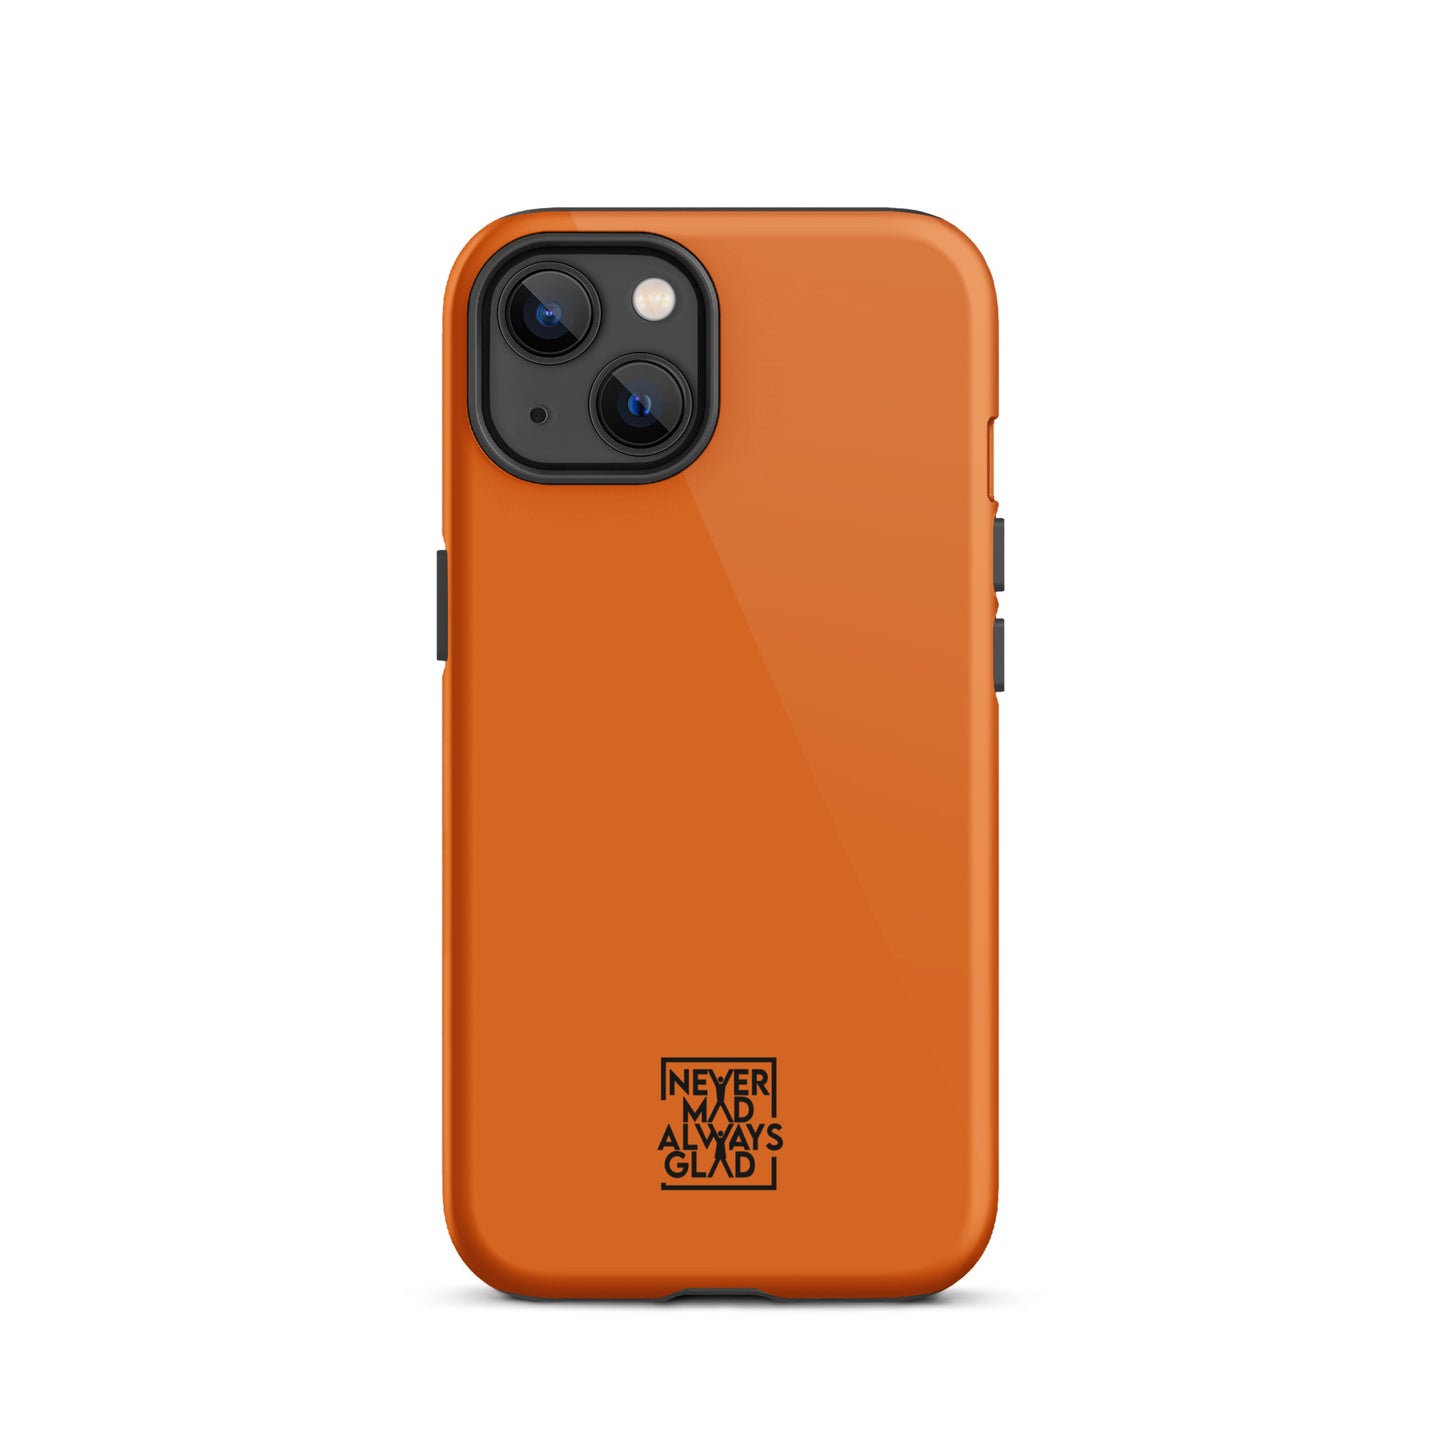 NMAG Orange Tough iPhone case